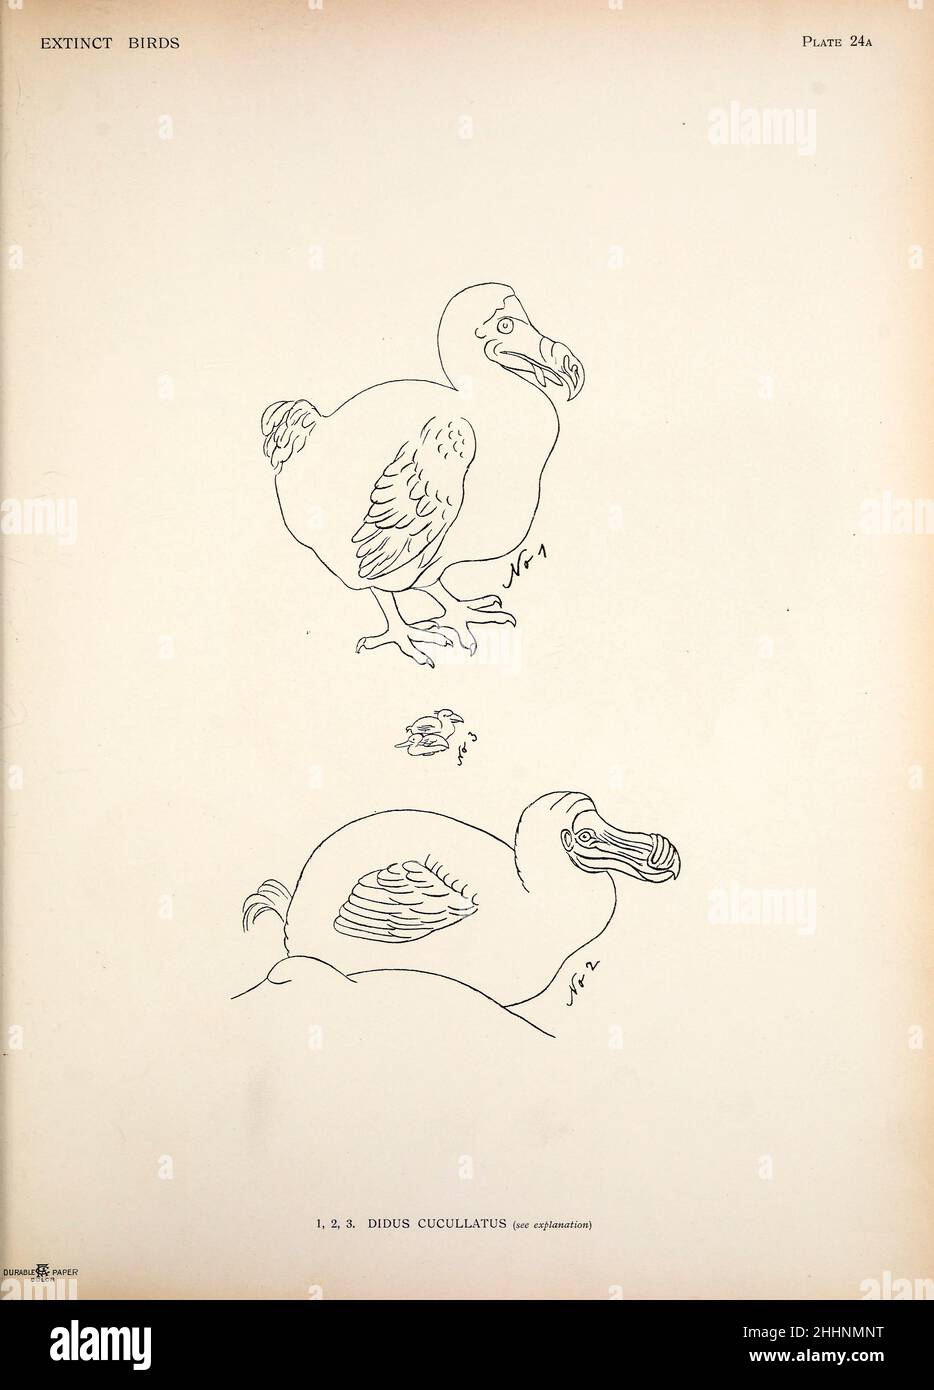 Der Dodo (Raphus cucucullatus hier als Didus cucullatus) ist ein ausgestorbener fluguntauglicher Vogel, der auf der Insel Mauritius, die östlich von Madagaskar im Indischen Ozean liegt, endemisch war. Ein Versuch, in einem Band eine kurze Darstellung jener Vögel zu vereinen, die in historischen Zeiten ausgestorben sind : das heißt, innerhalb der letzten sechs oder siebenhundert Jahre : Hinzu kommen noch einige wenige, die noch existieren, aber am Rande des Aussterbens stehen. Von Baron, Lionel Walter Rothschild, 1868-1937 Veröffentlicht 1907 als limitiertes Buch in London von Hutchinson & Co Stockfoto